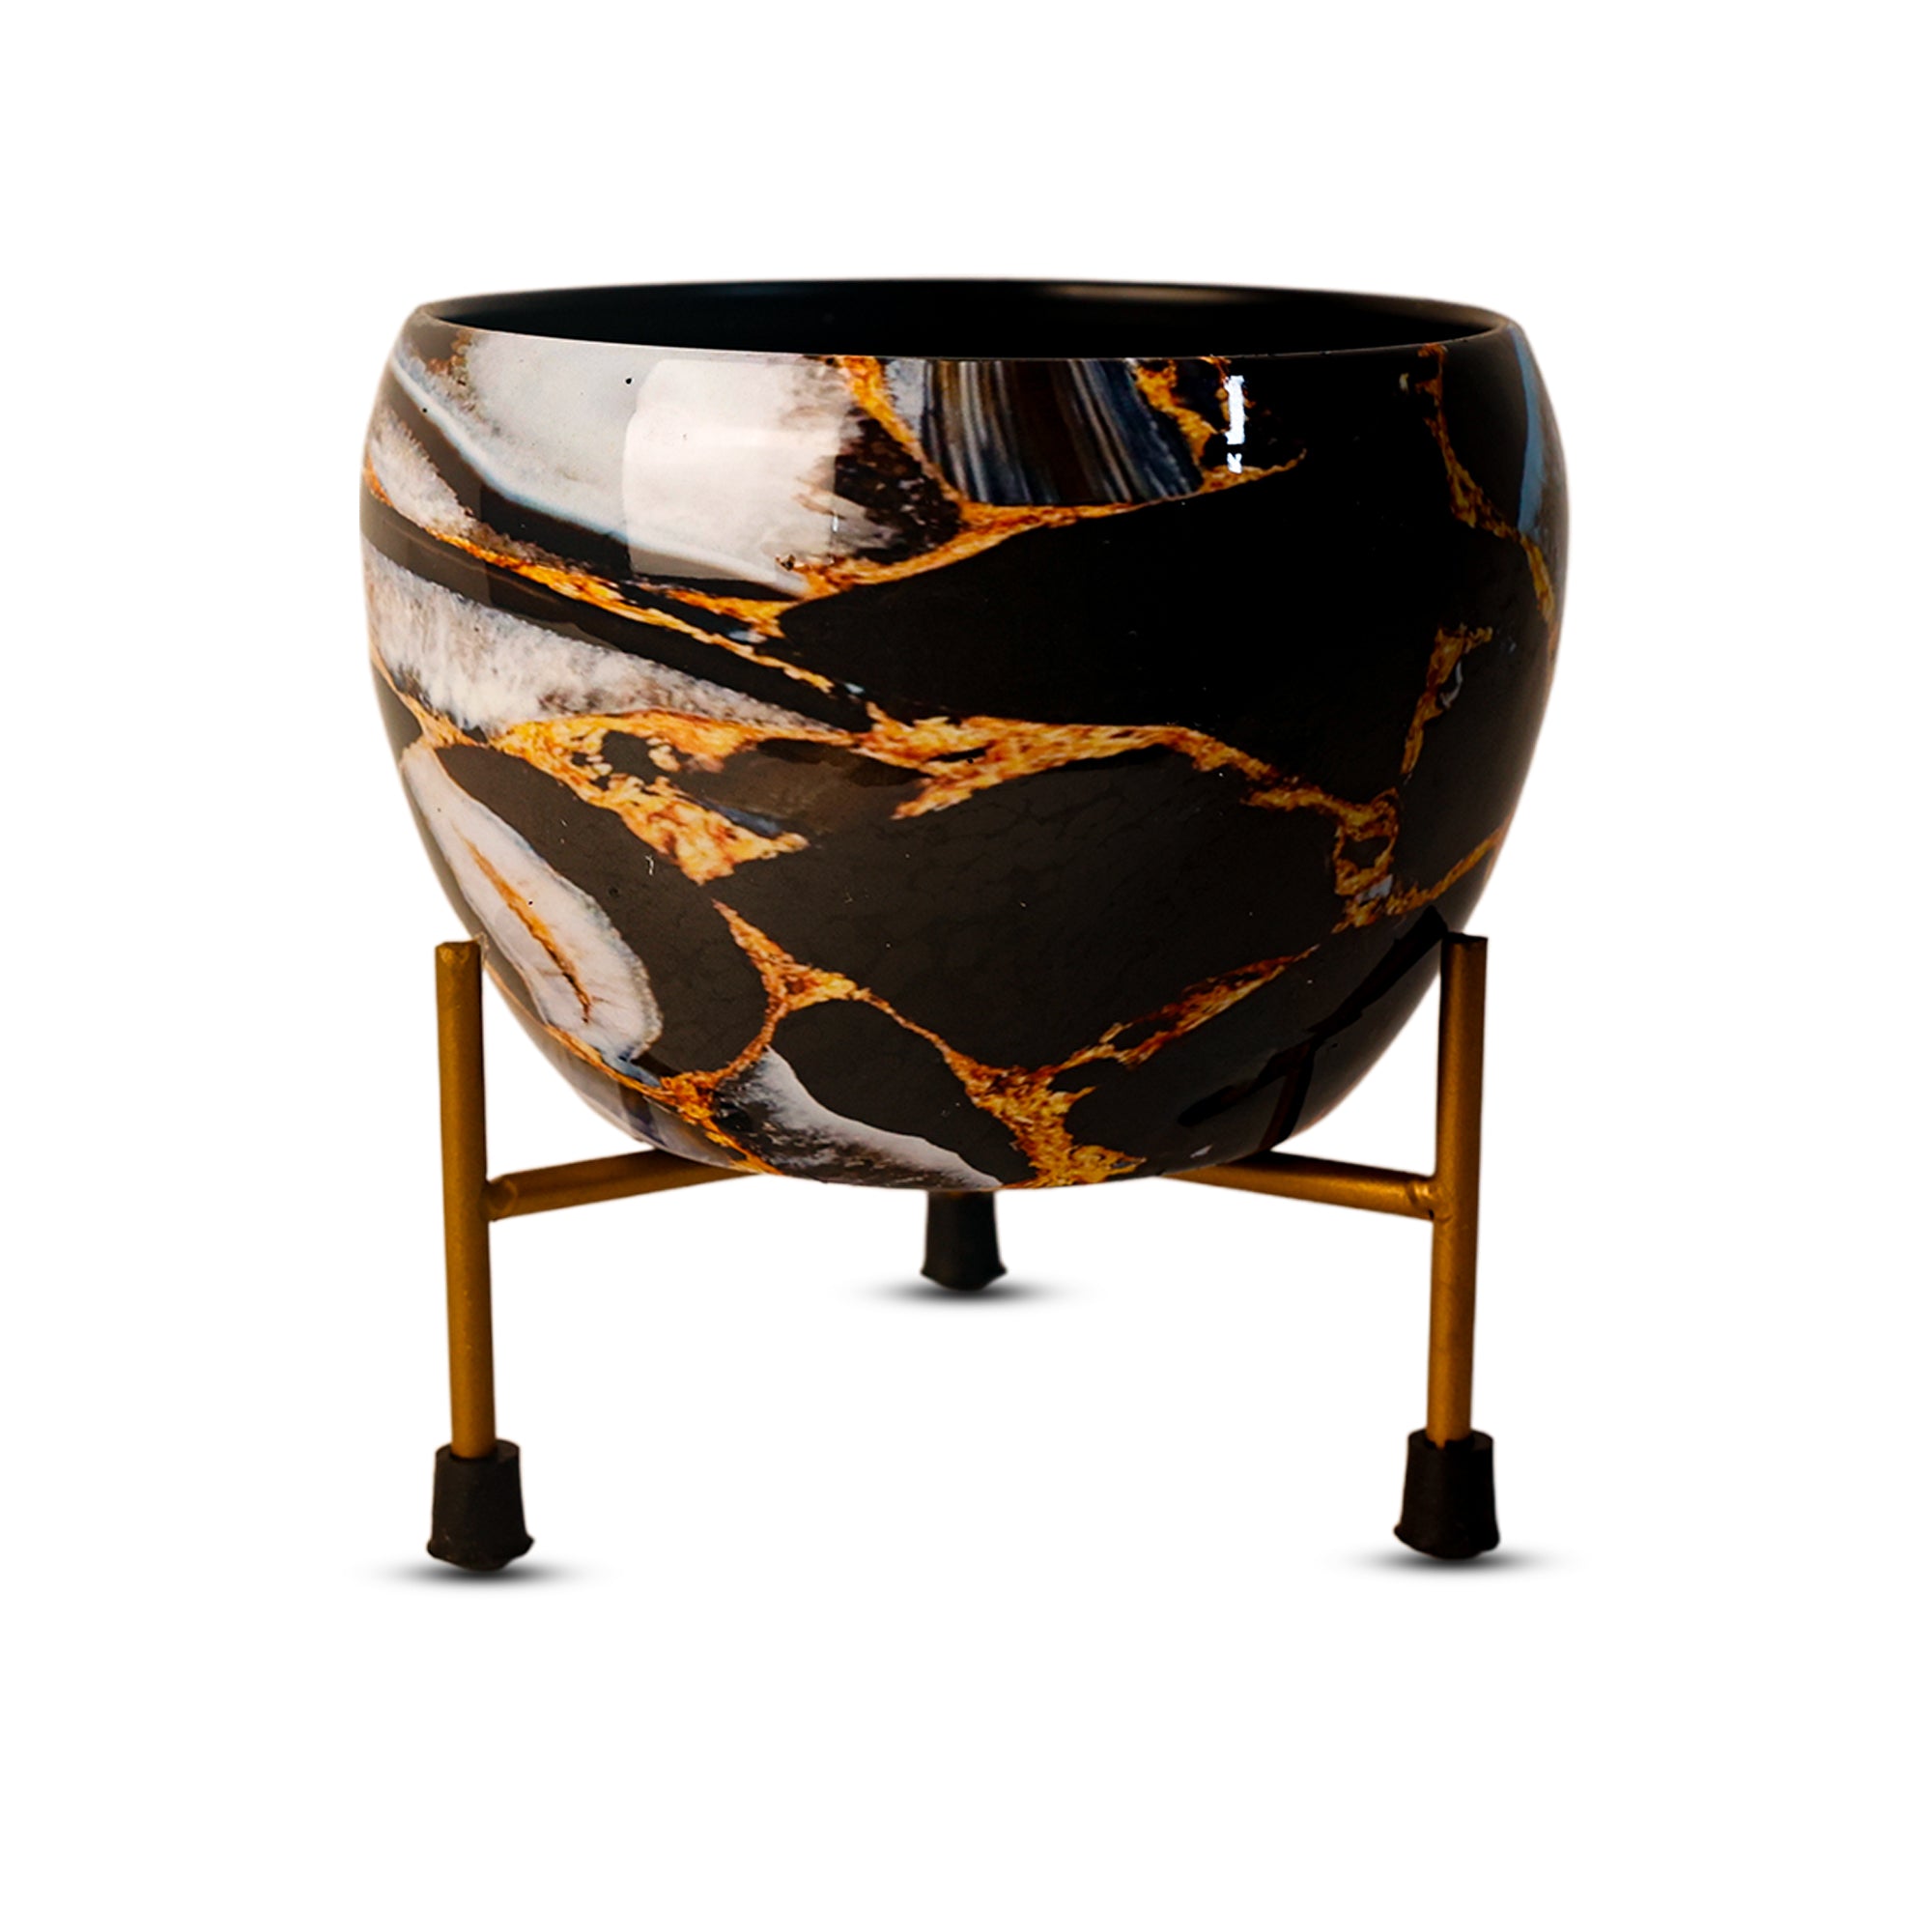 Indoor Metal decor Vase/Planter- Black & Gold Set of 2